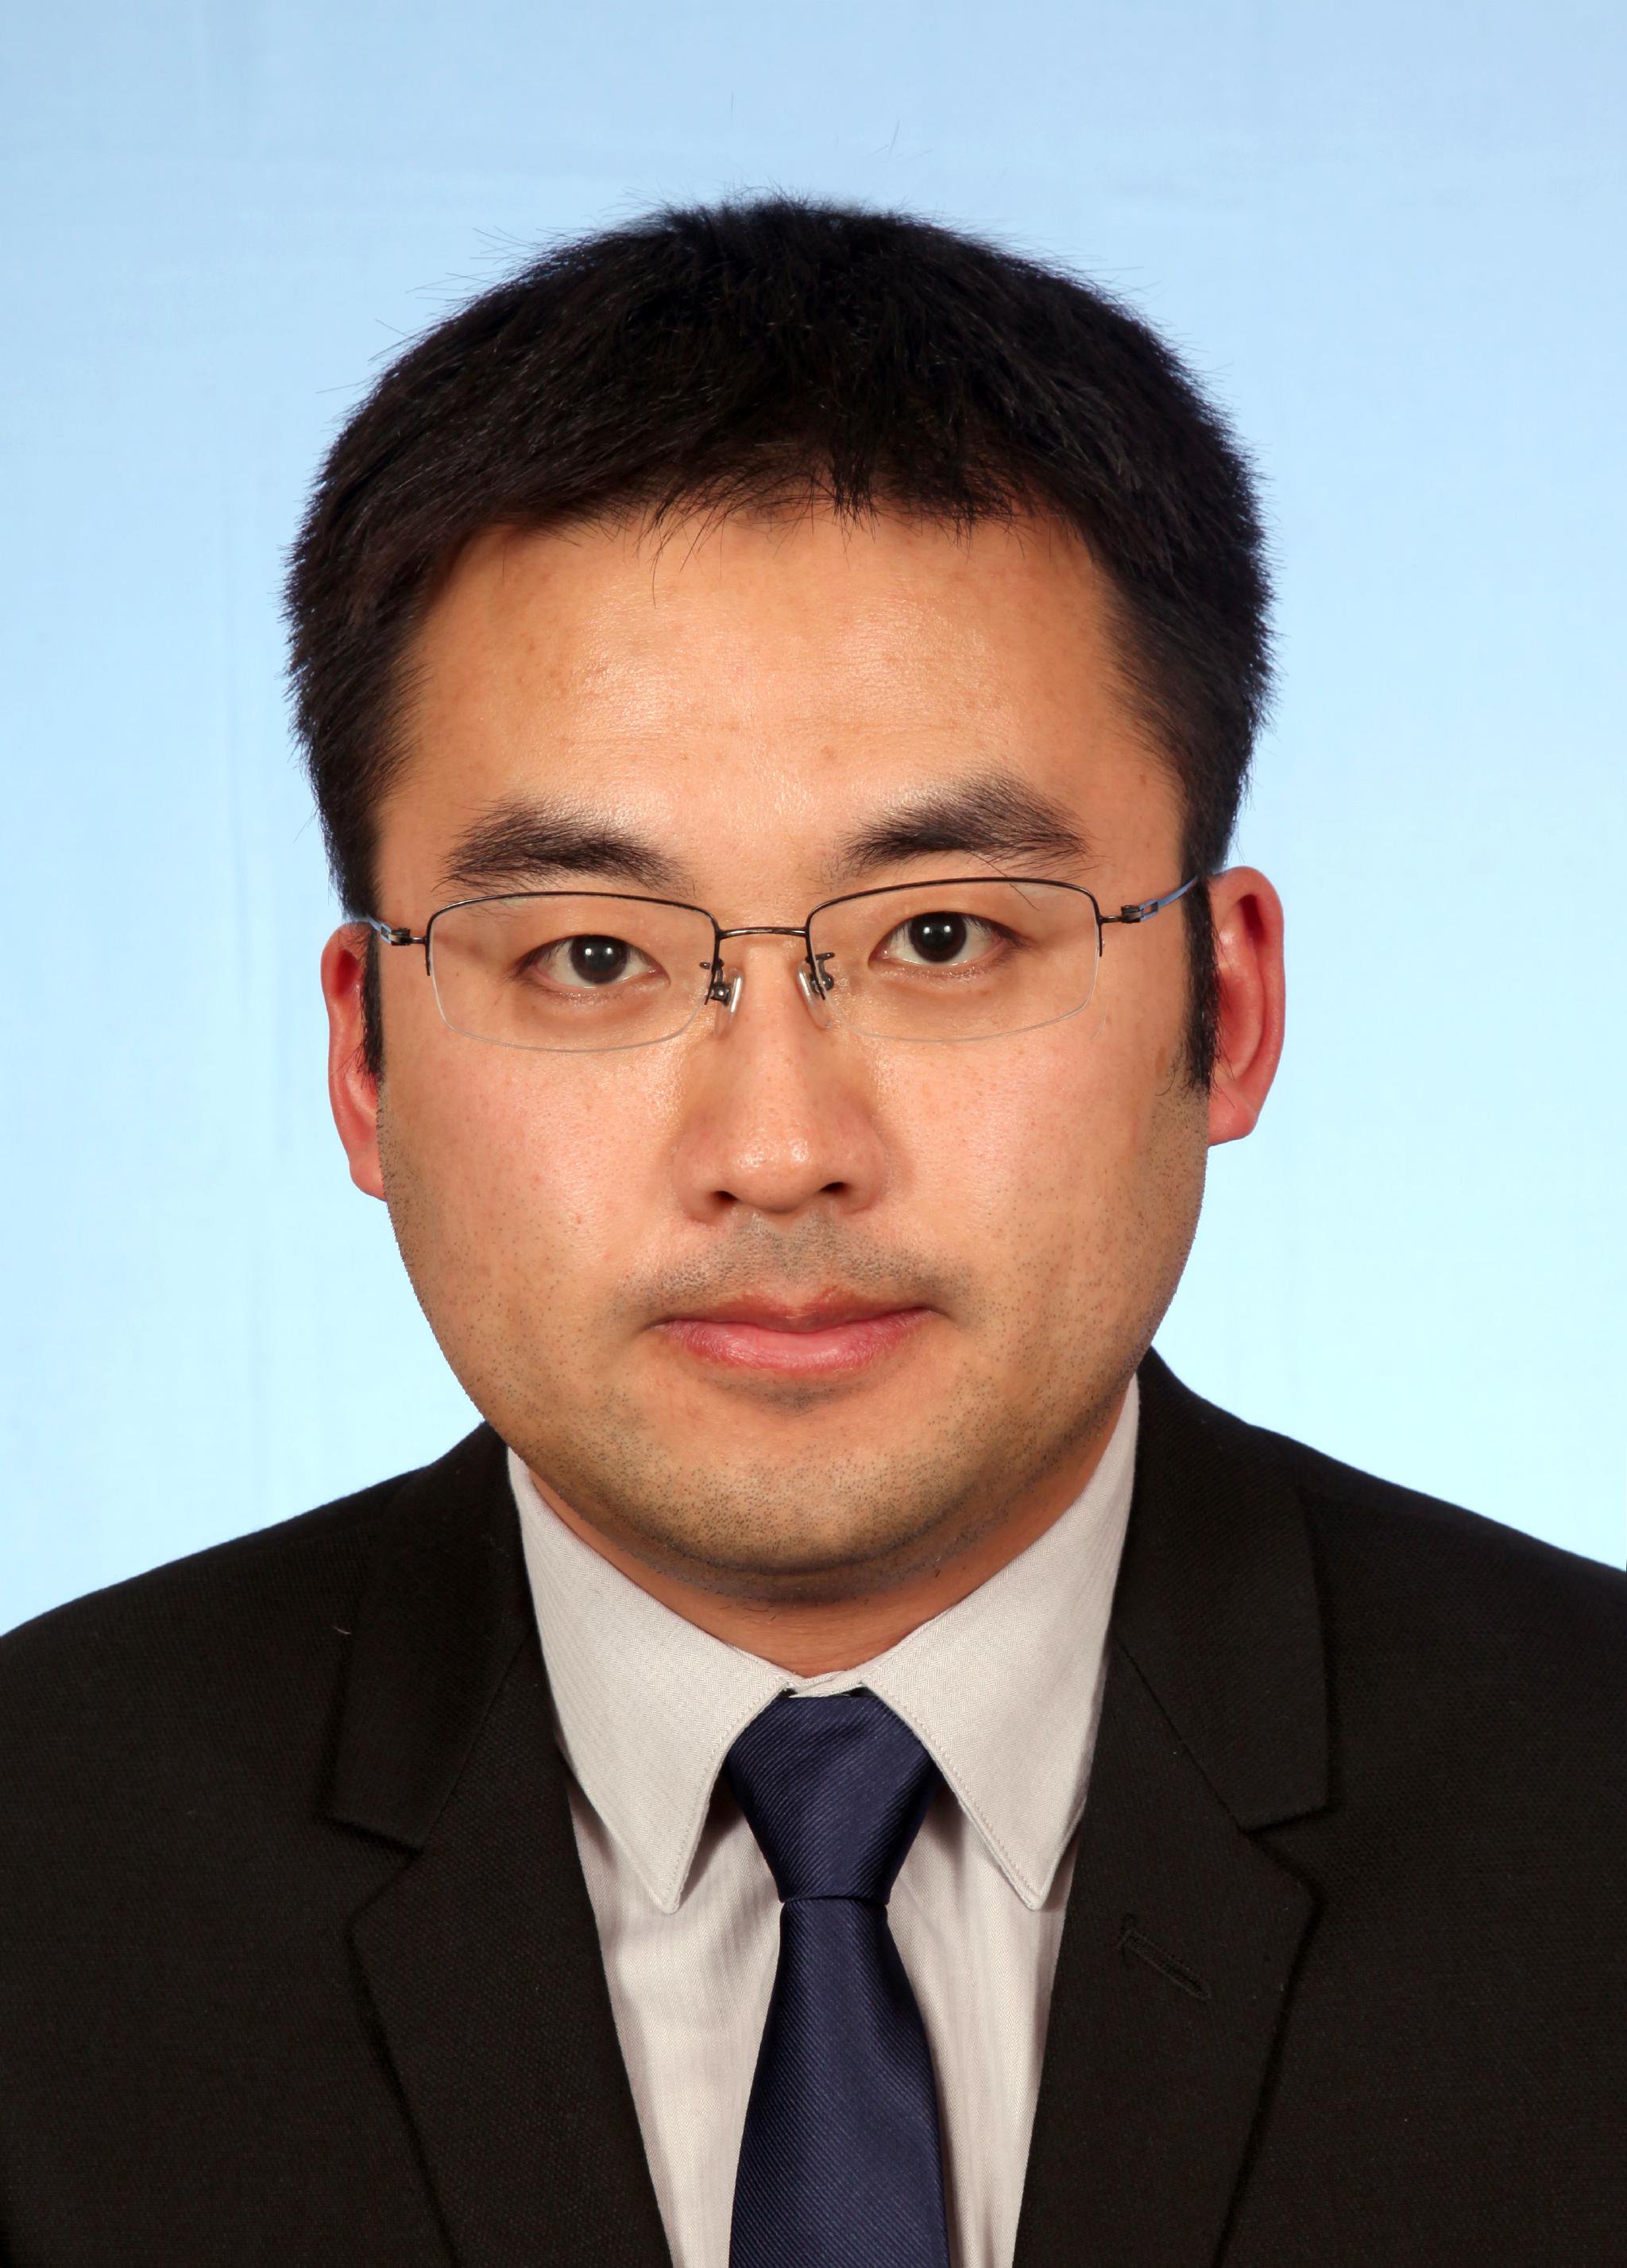 华东师范大学化学与分子工程学院教授、博士生导师姜雪峰。